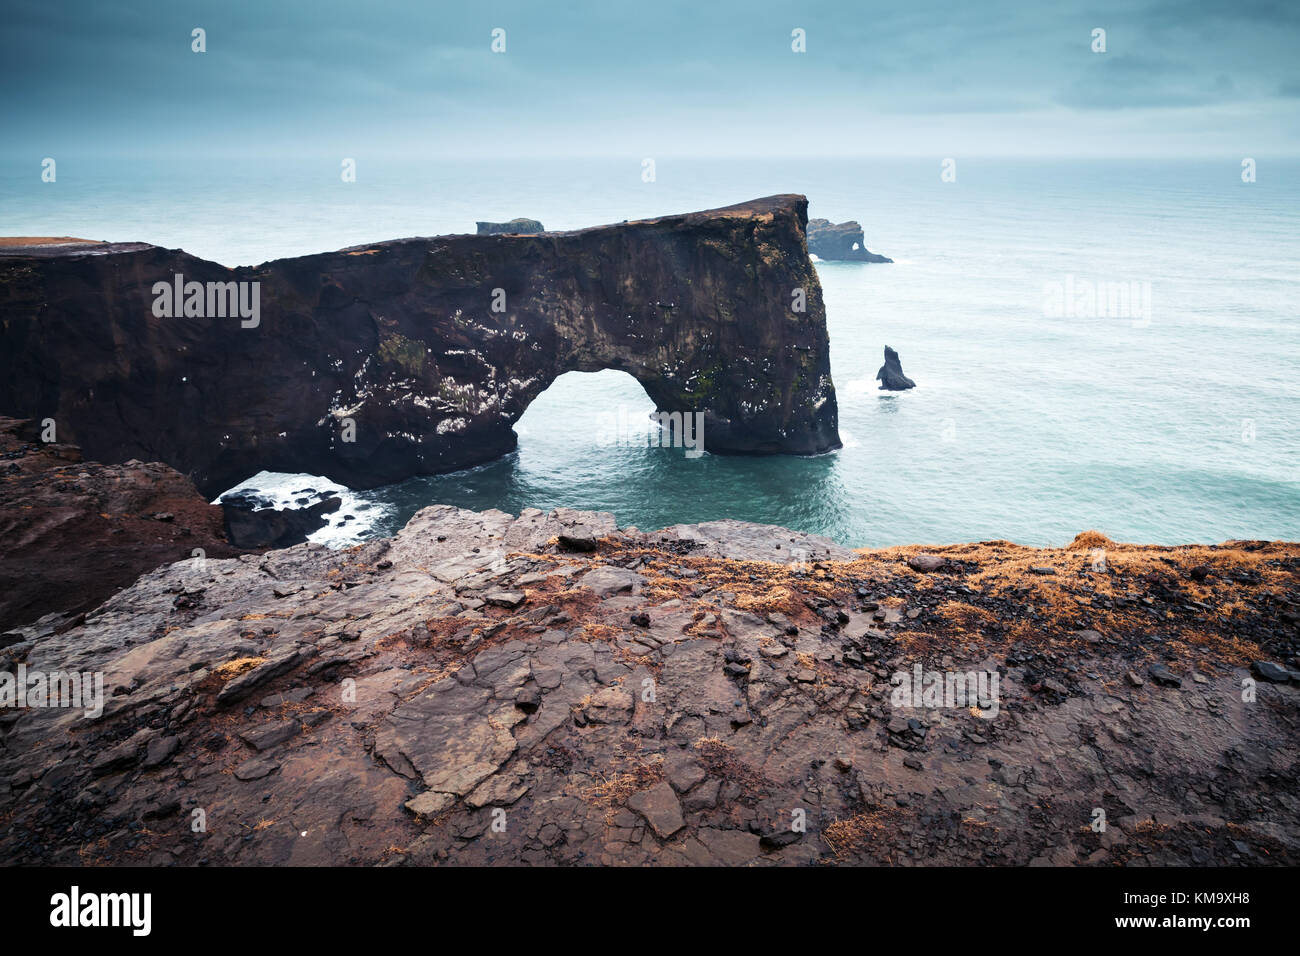 Arche rocheuse naturelle. paysage pittoresque de la réserve naturelle de dyrhólaey, côte sud de l'Islande, de l'Europe Banque D'Images